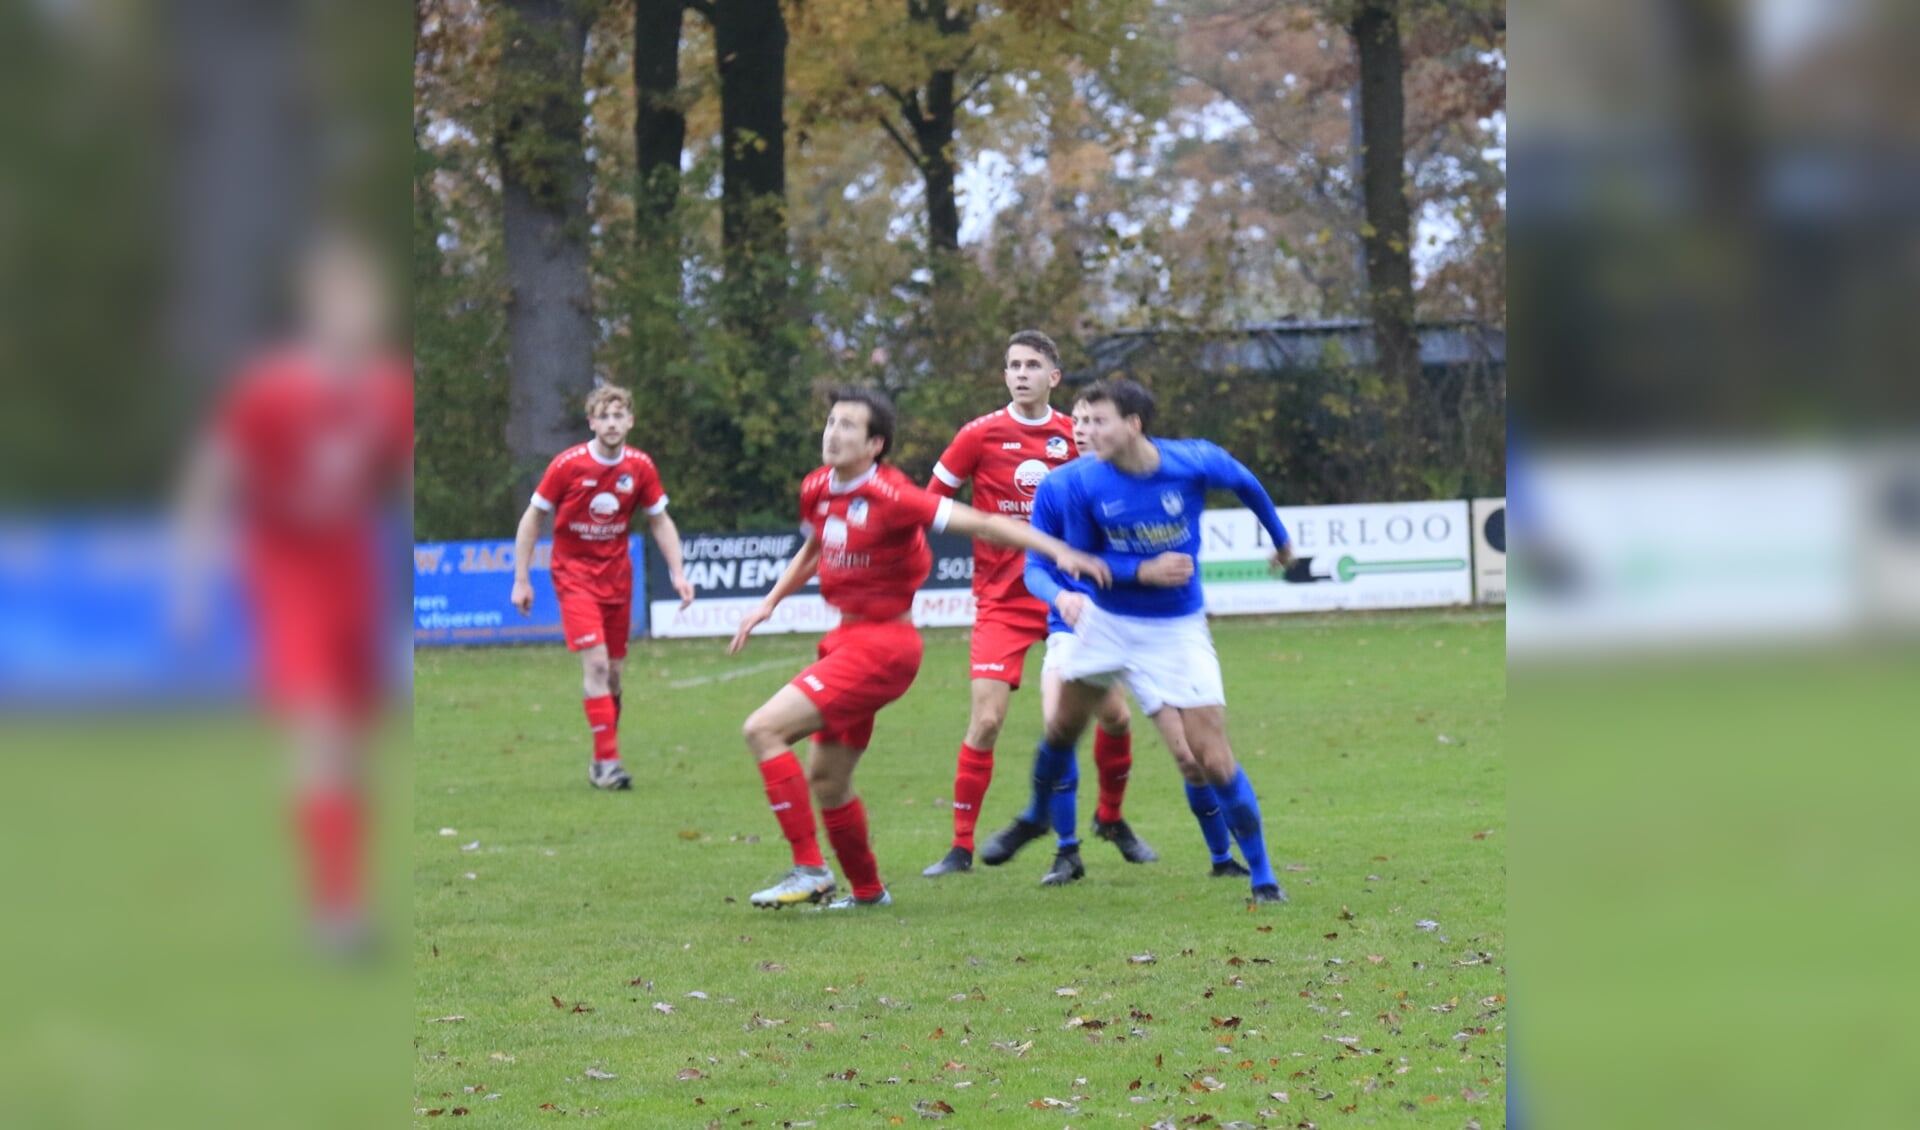 Olympia'18 in het rood speelde met 0-0 gelijk tegen VV Heeswijk. 